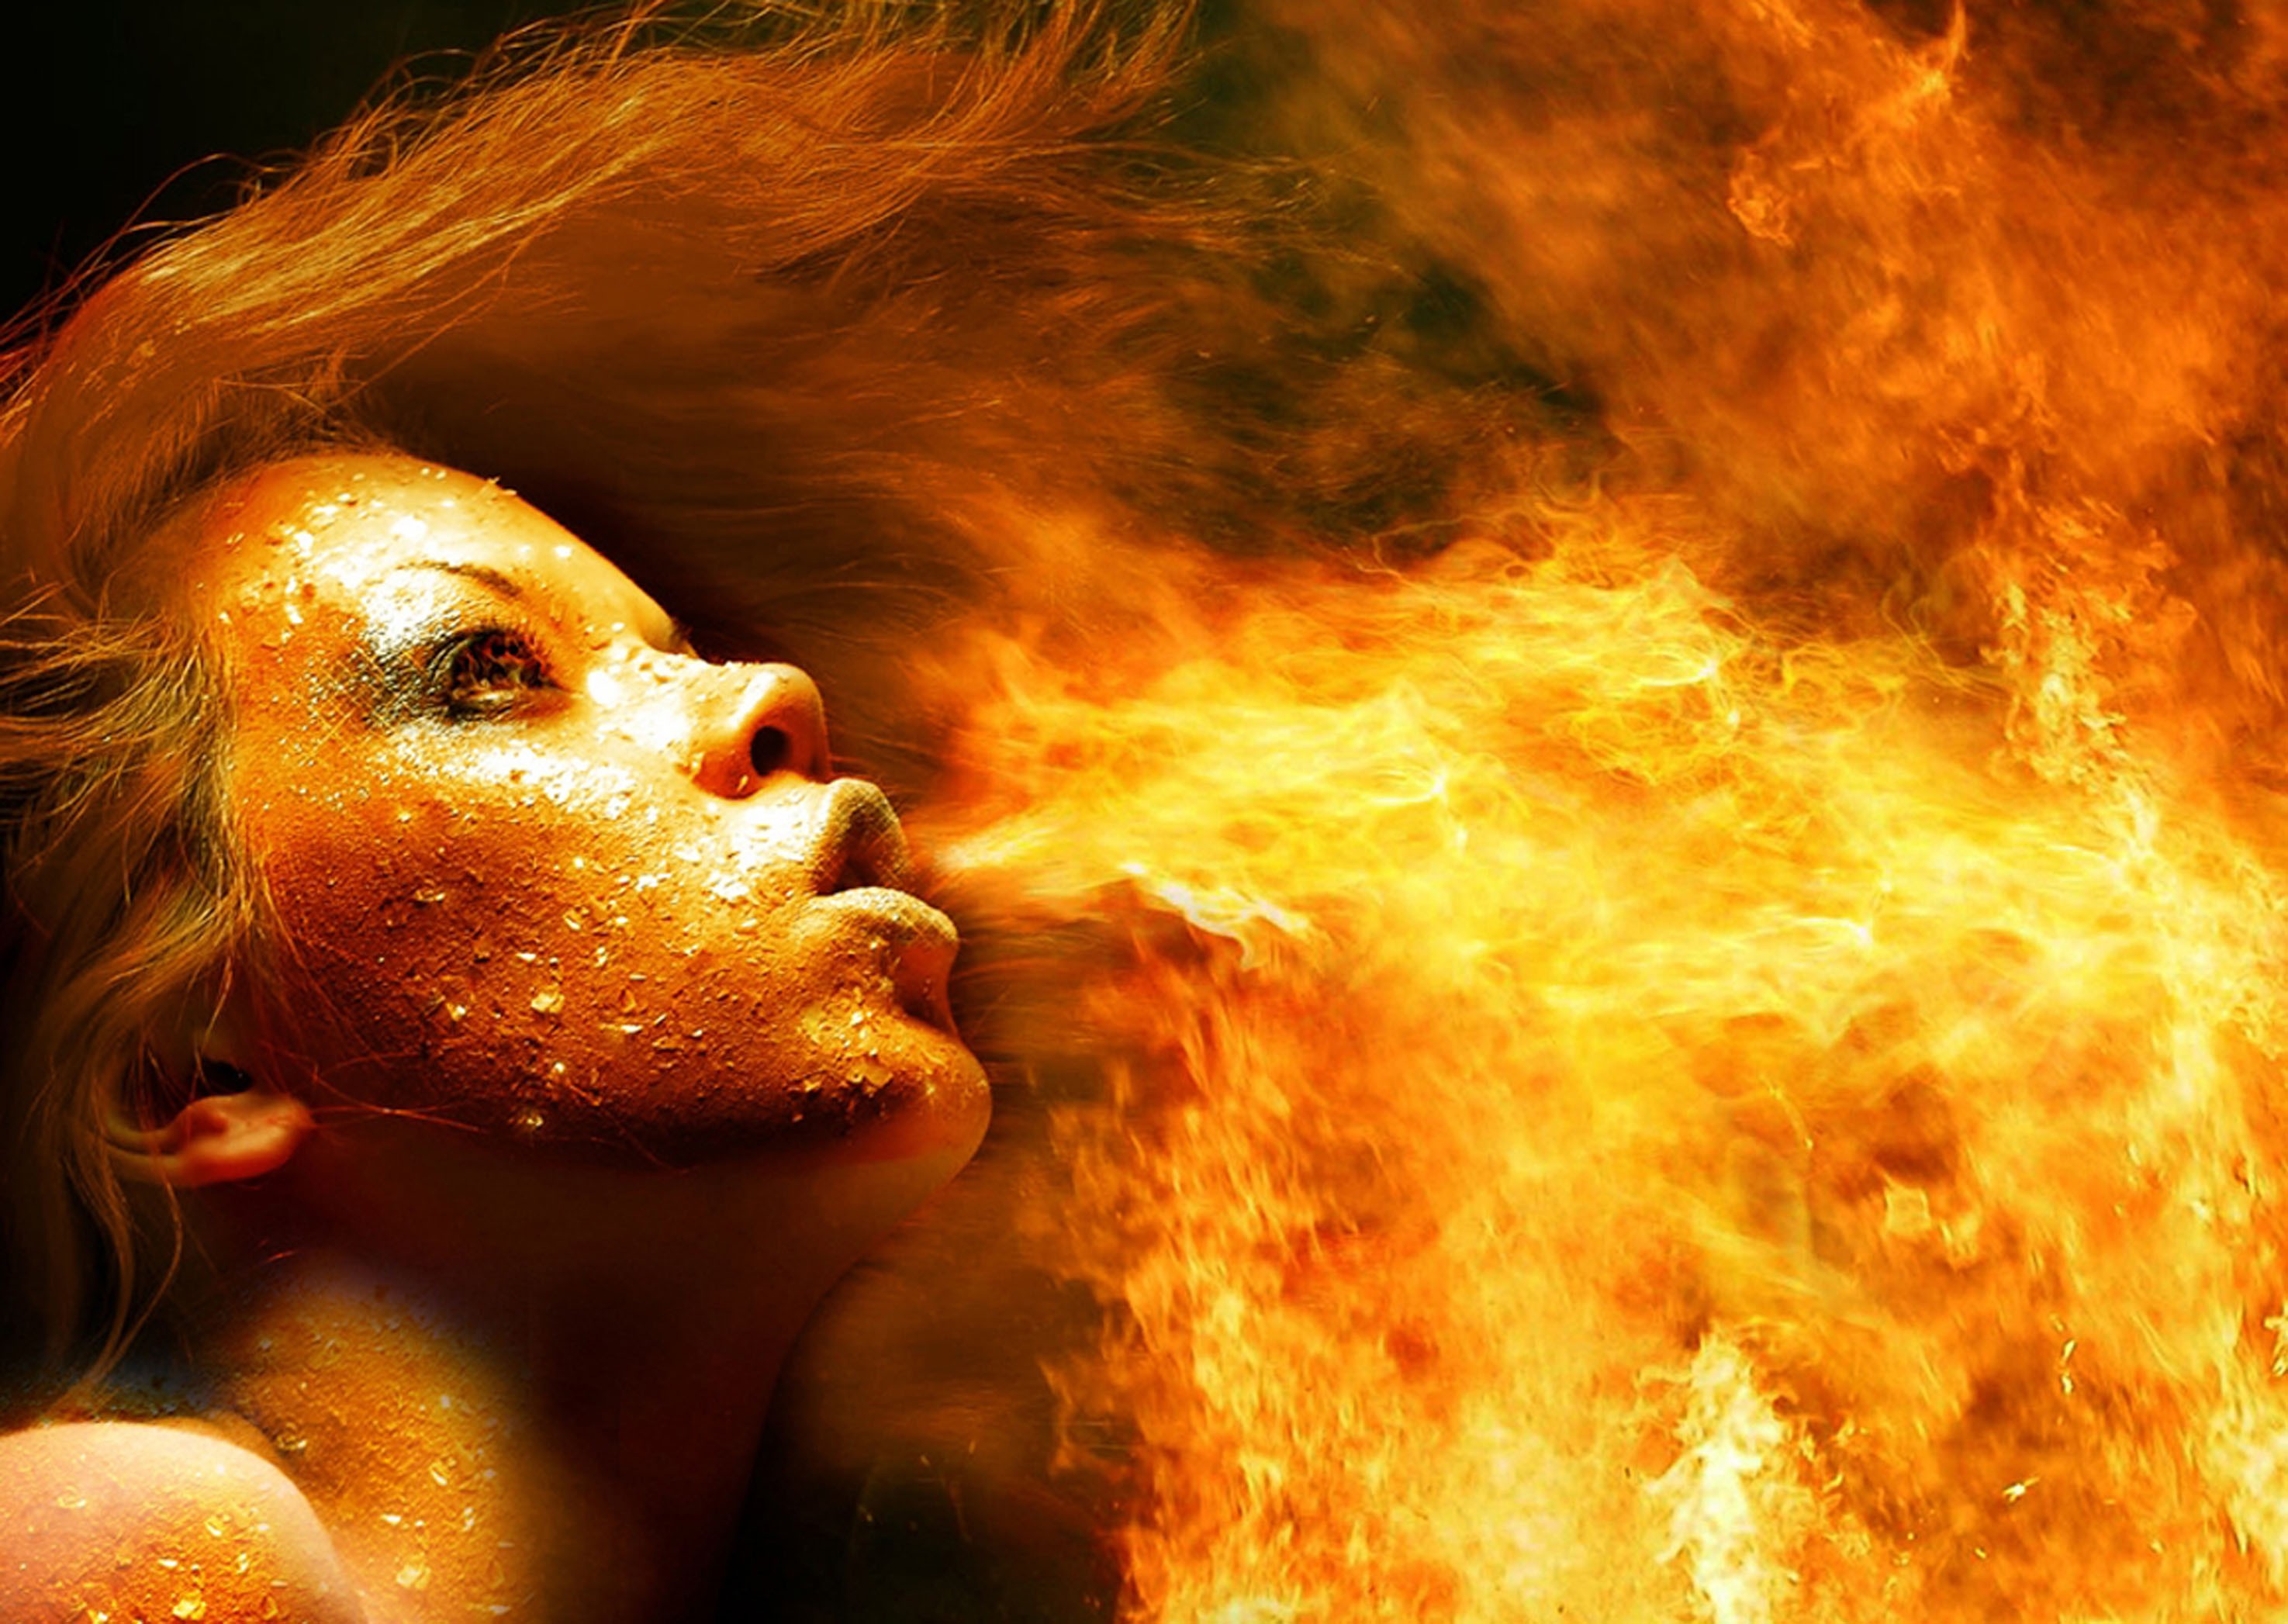 Download Free Fire Wallpaper Hd - Girl Breathing Fire - HD Wallpaper 